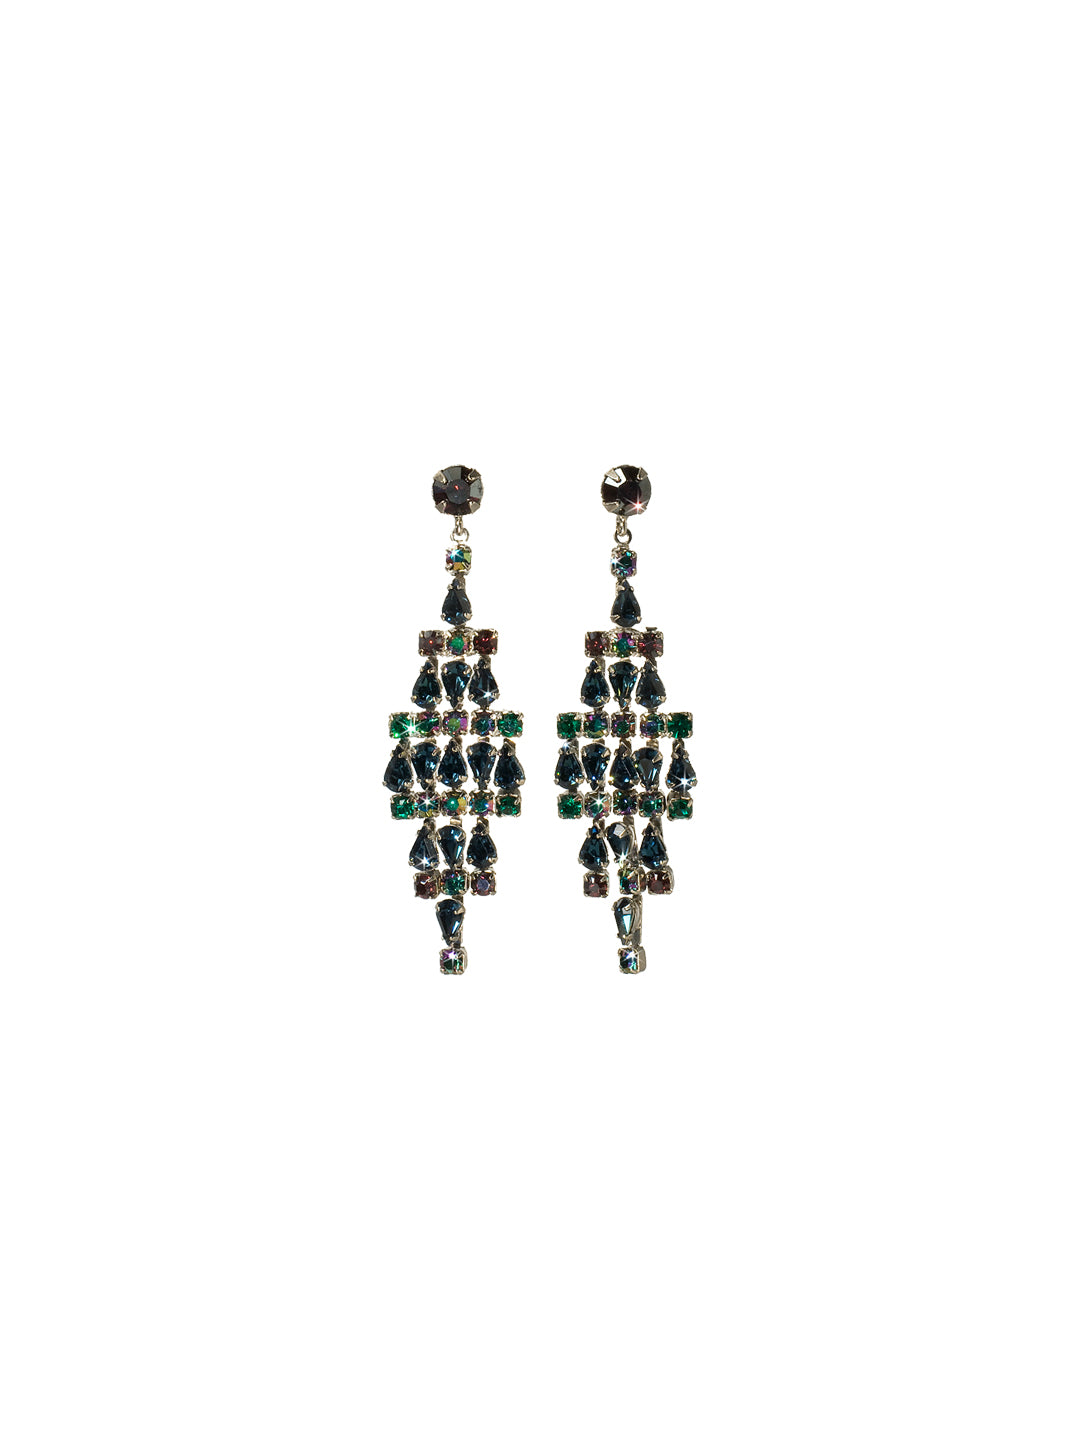 Tiered Crystal Drop Earring Dangle Earrings - ECK45ASEMC